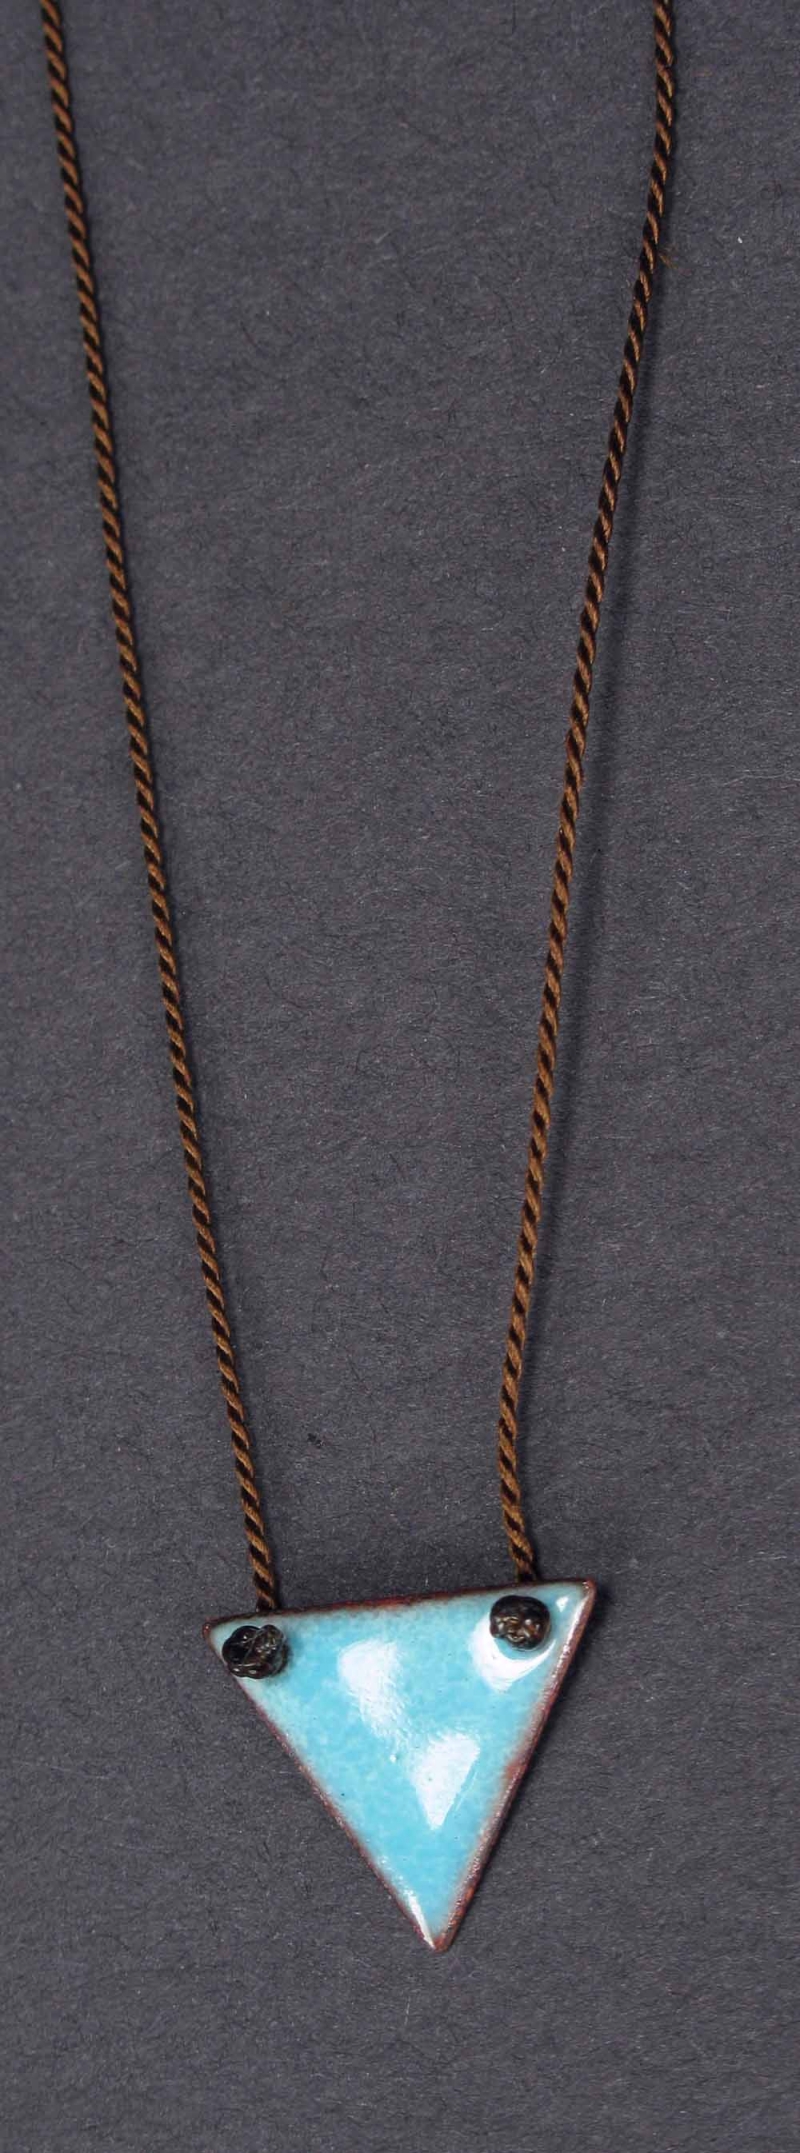 Copper Enamel Triangle Necklace - Small